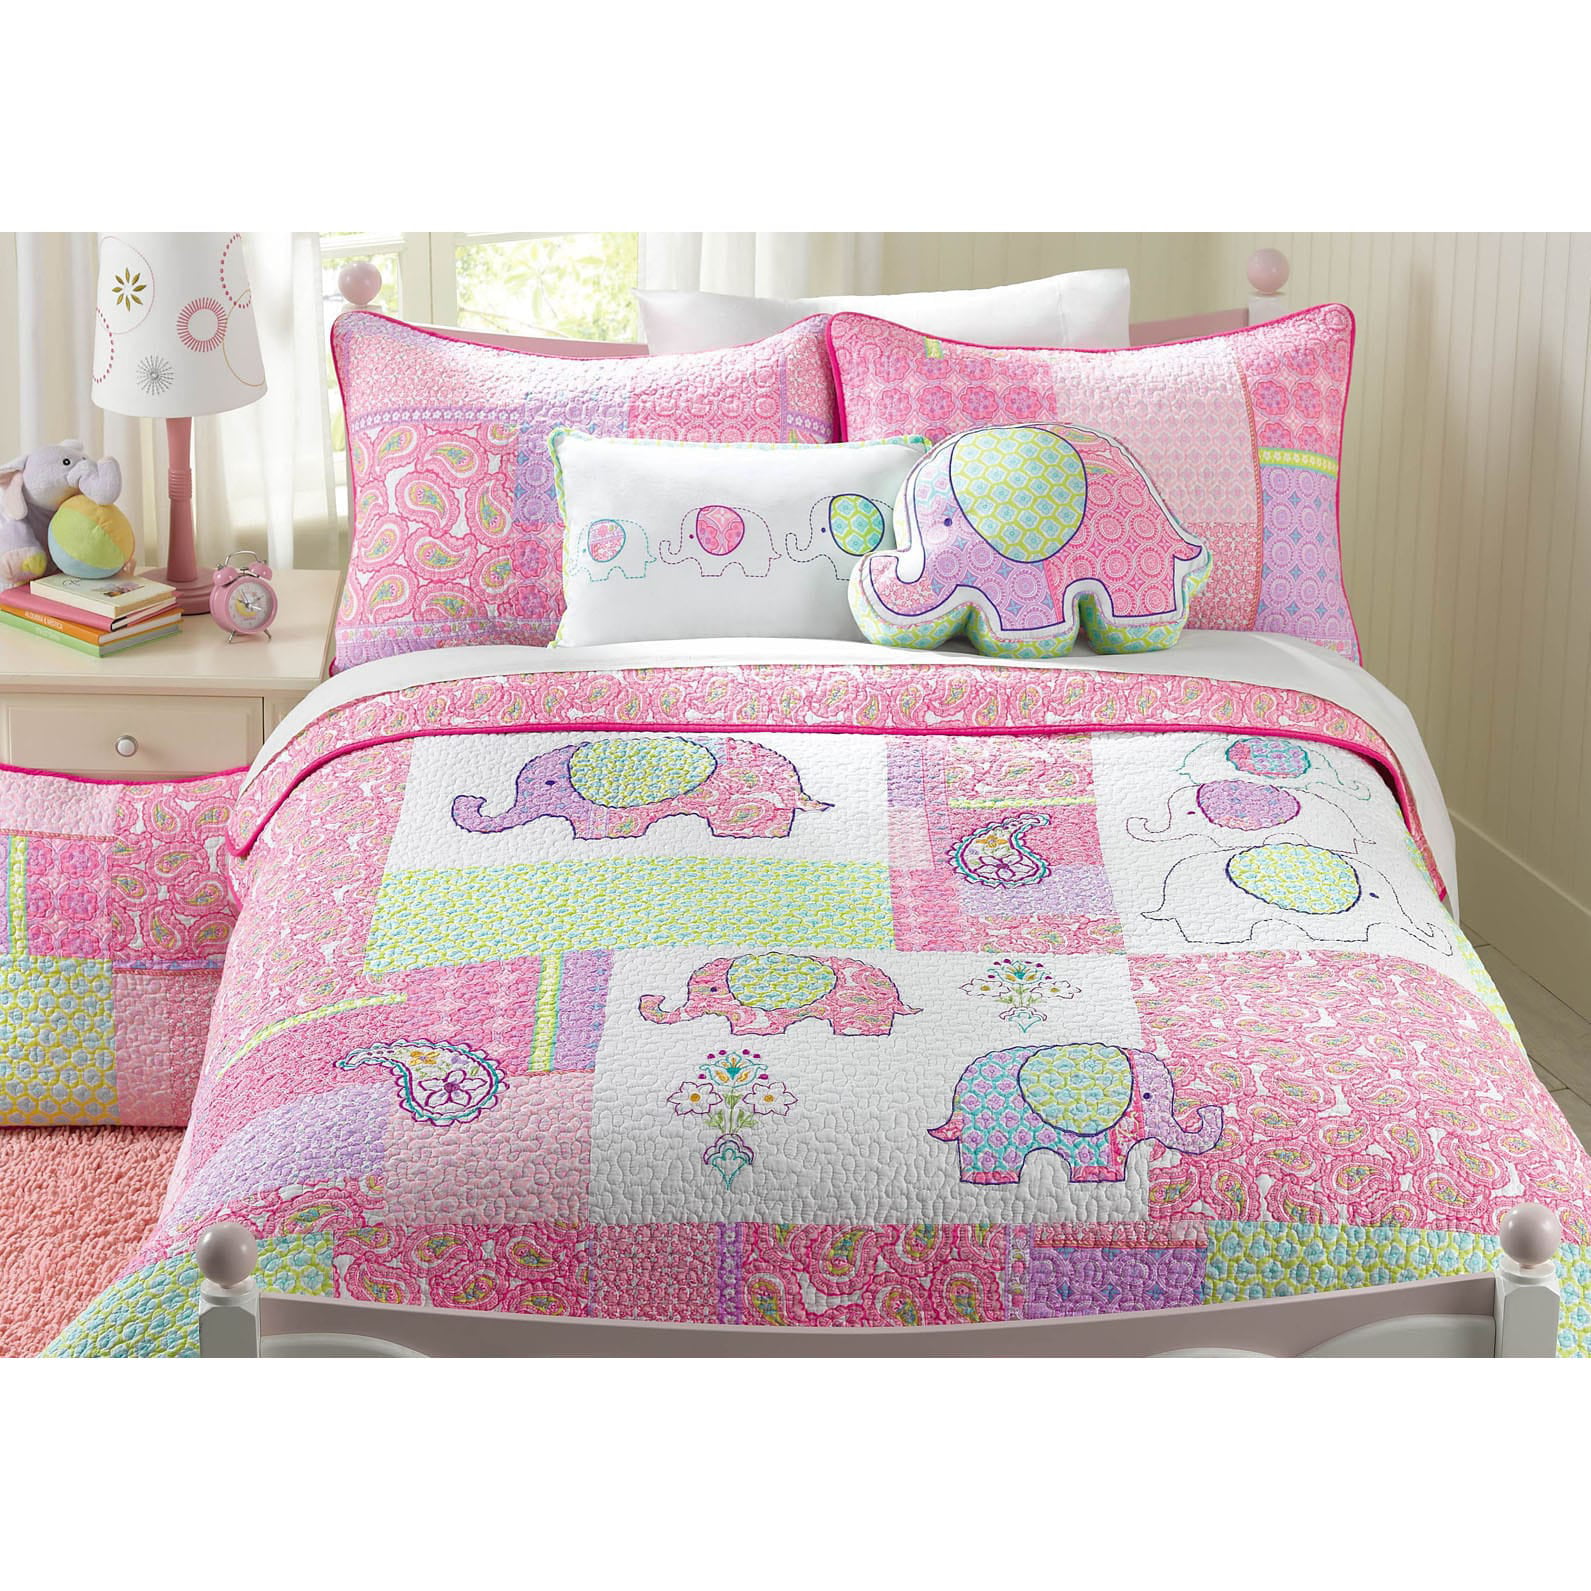 Fancy Linen 3pc Twin Size Reversible Bedspread Elephants Pink Green Blue New